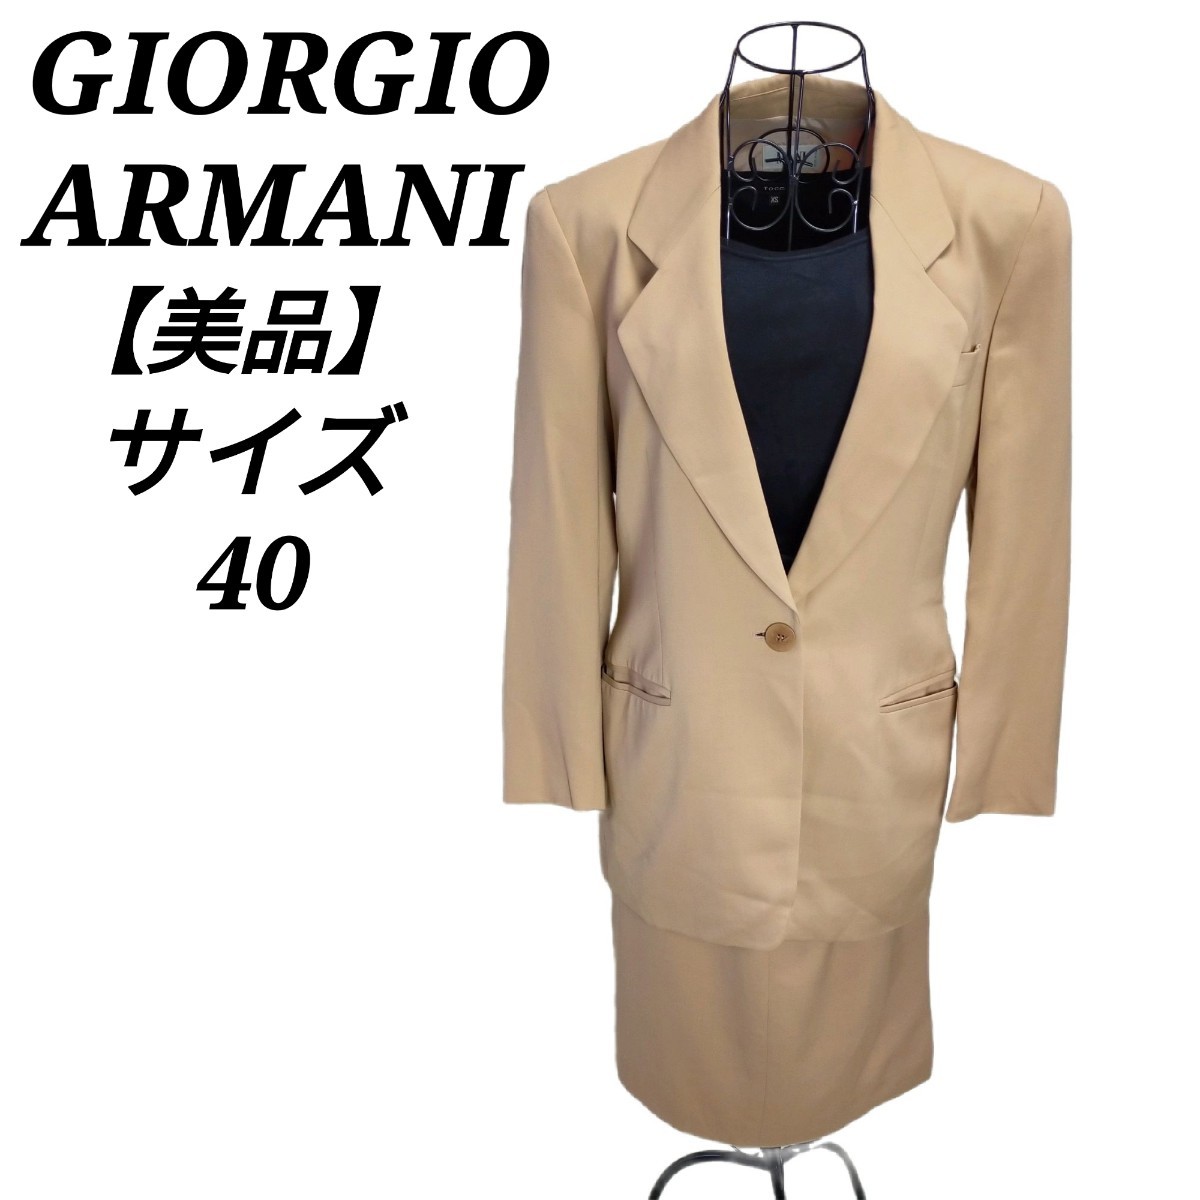 【お買得】 シングル ARMANI【40】スカートスーツセットアップ GIORGIO ジョルジオアルマーニ イタリア製 レディース 美品 ベージュ スーツ(ミニスカート)